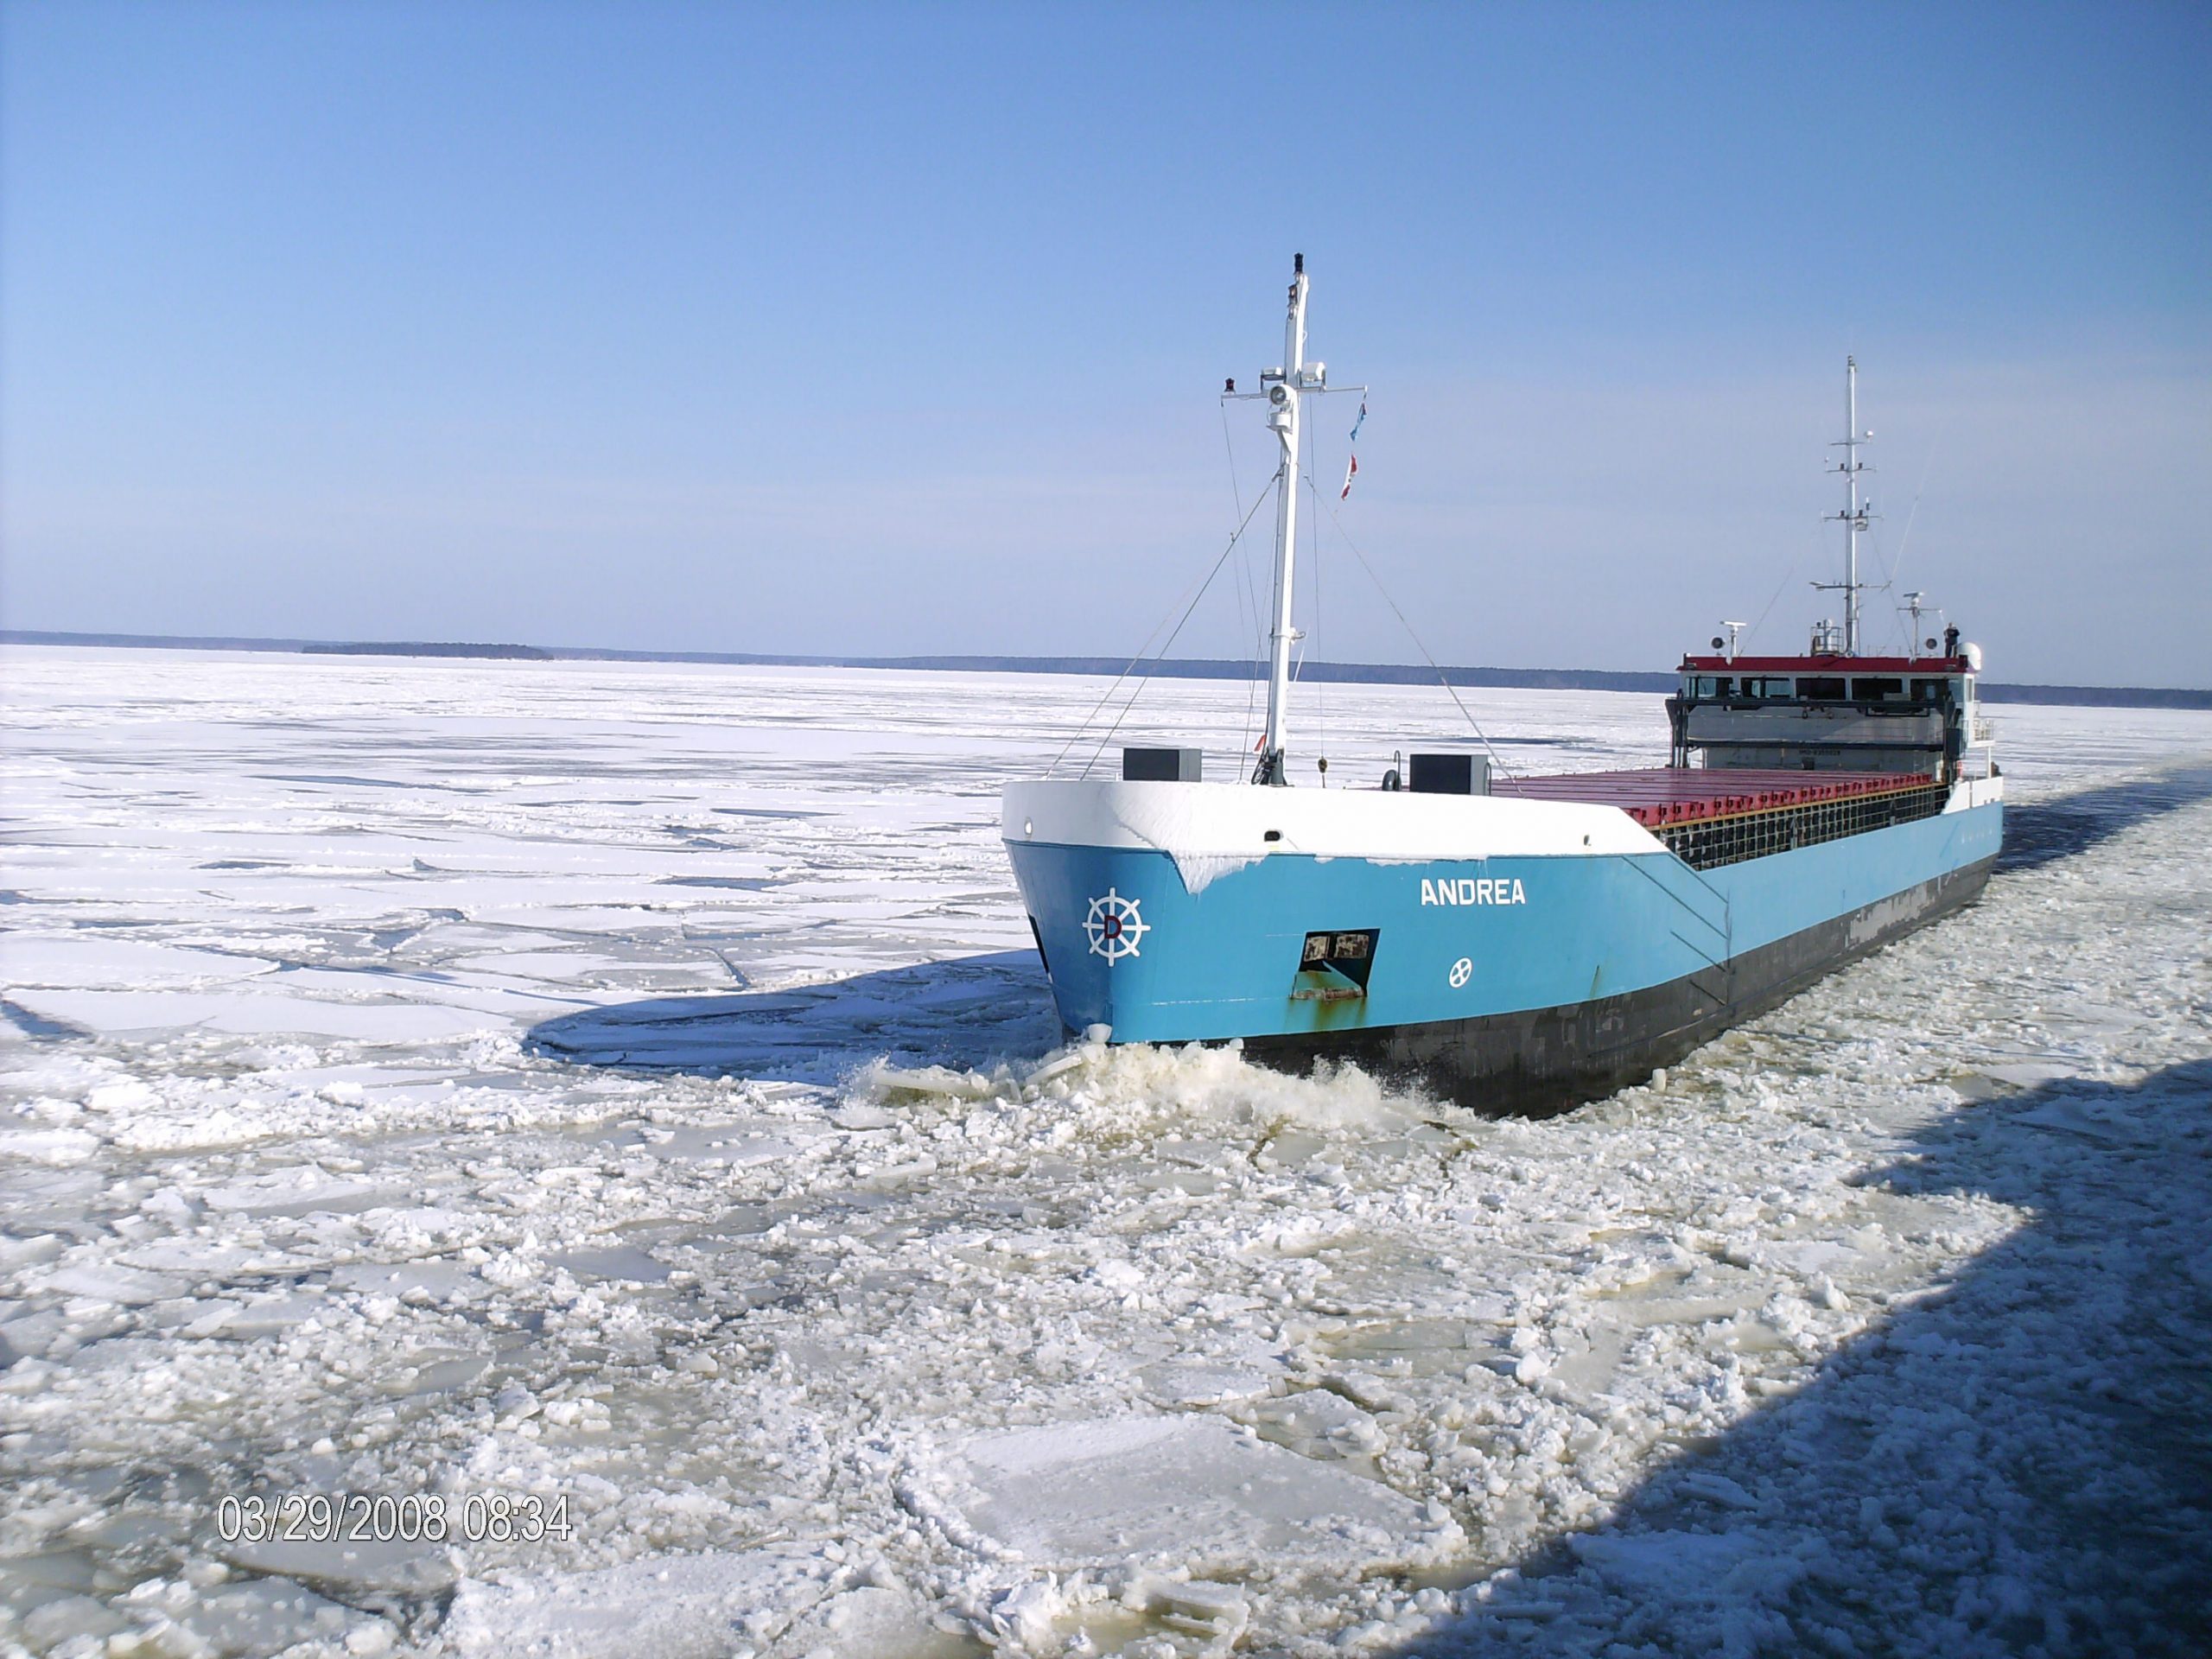 Van Dam Shipping vaart met acht eigen schepen en twee in beheer, hoofdzakelijk in Noordwest-Europa. De schepen zijn berekend op ijsgang. (Foto Van Dam Shipping)